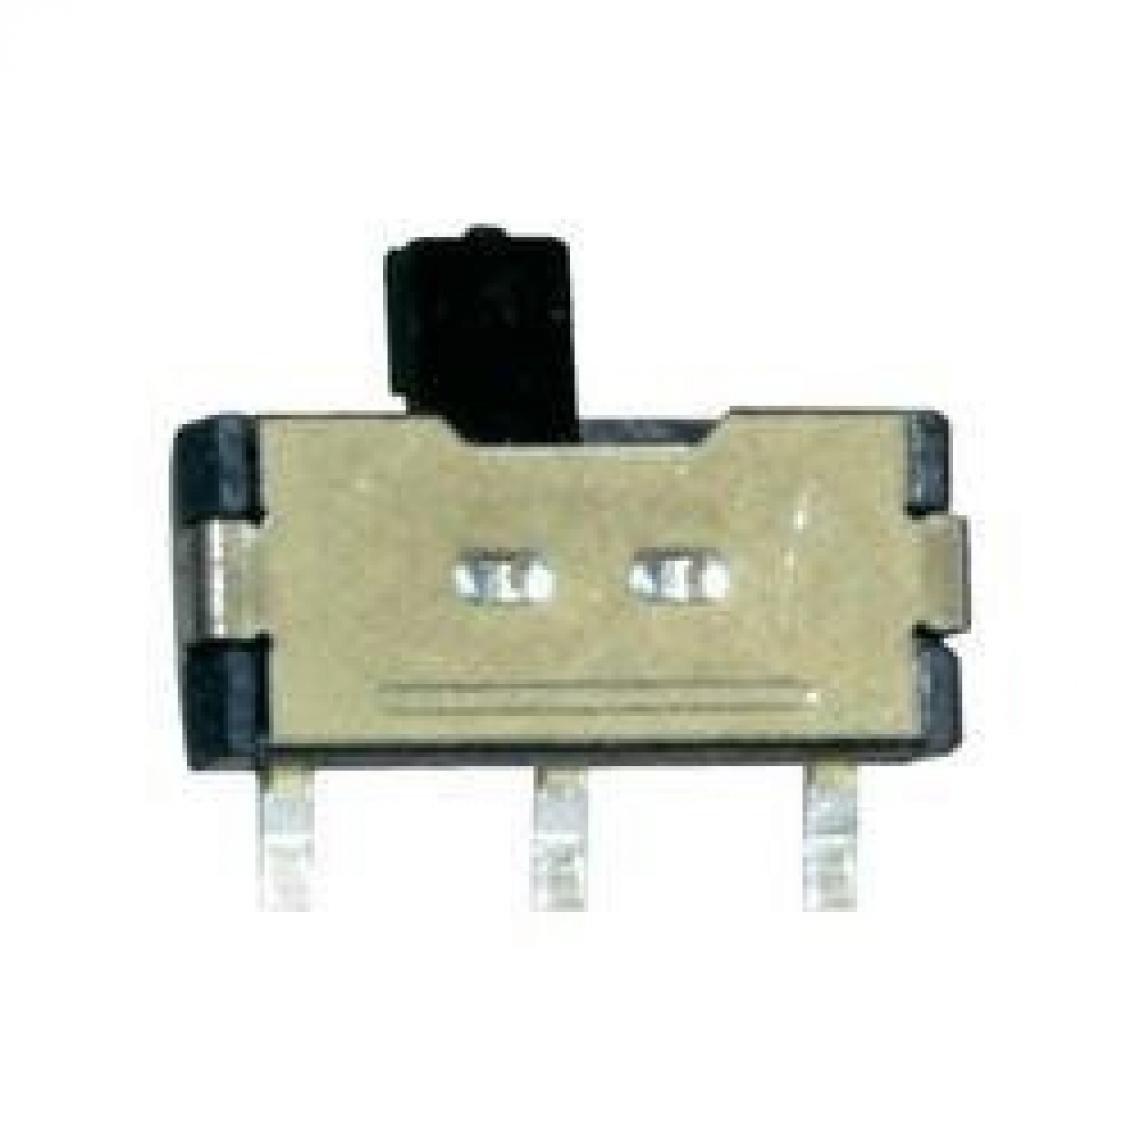 Inconnu - Micro-interrupteur coulissant Sol Expert SUM 1 pc(s) - Accessoires et pièces